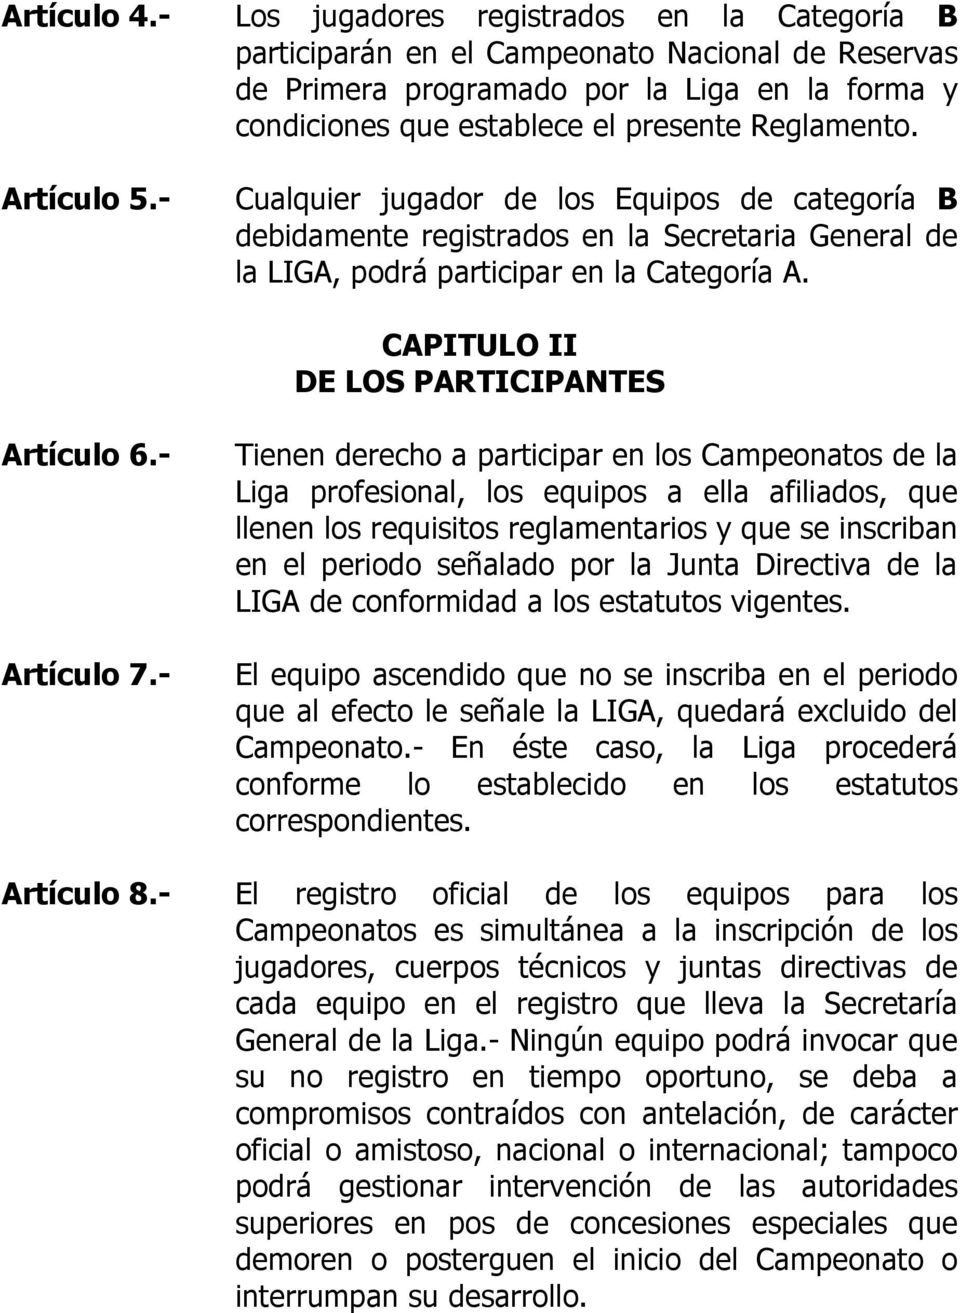 Artículo 5.- Cualquier jugador de los Equipos de categoría B debidamente registrados en la Secretaria General de la LIGA, podrá participar en la Categoría A.